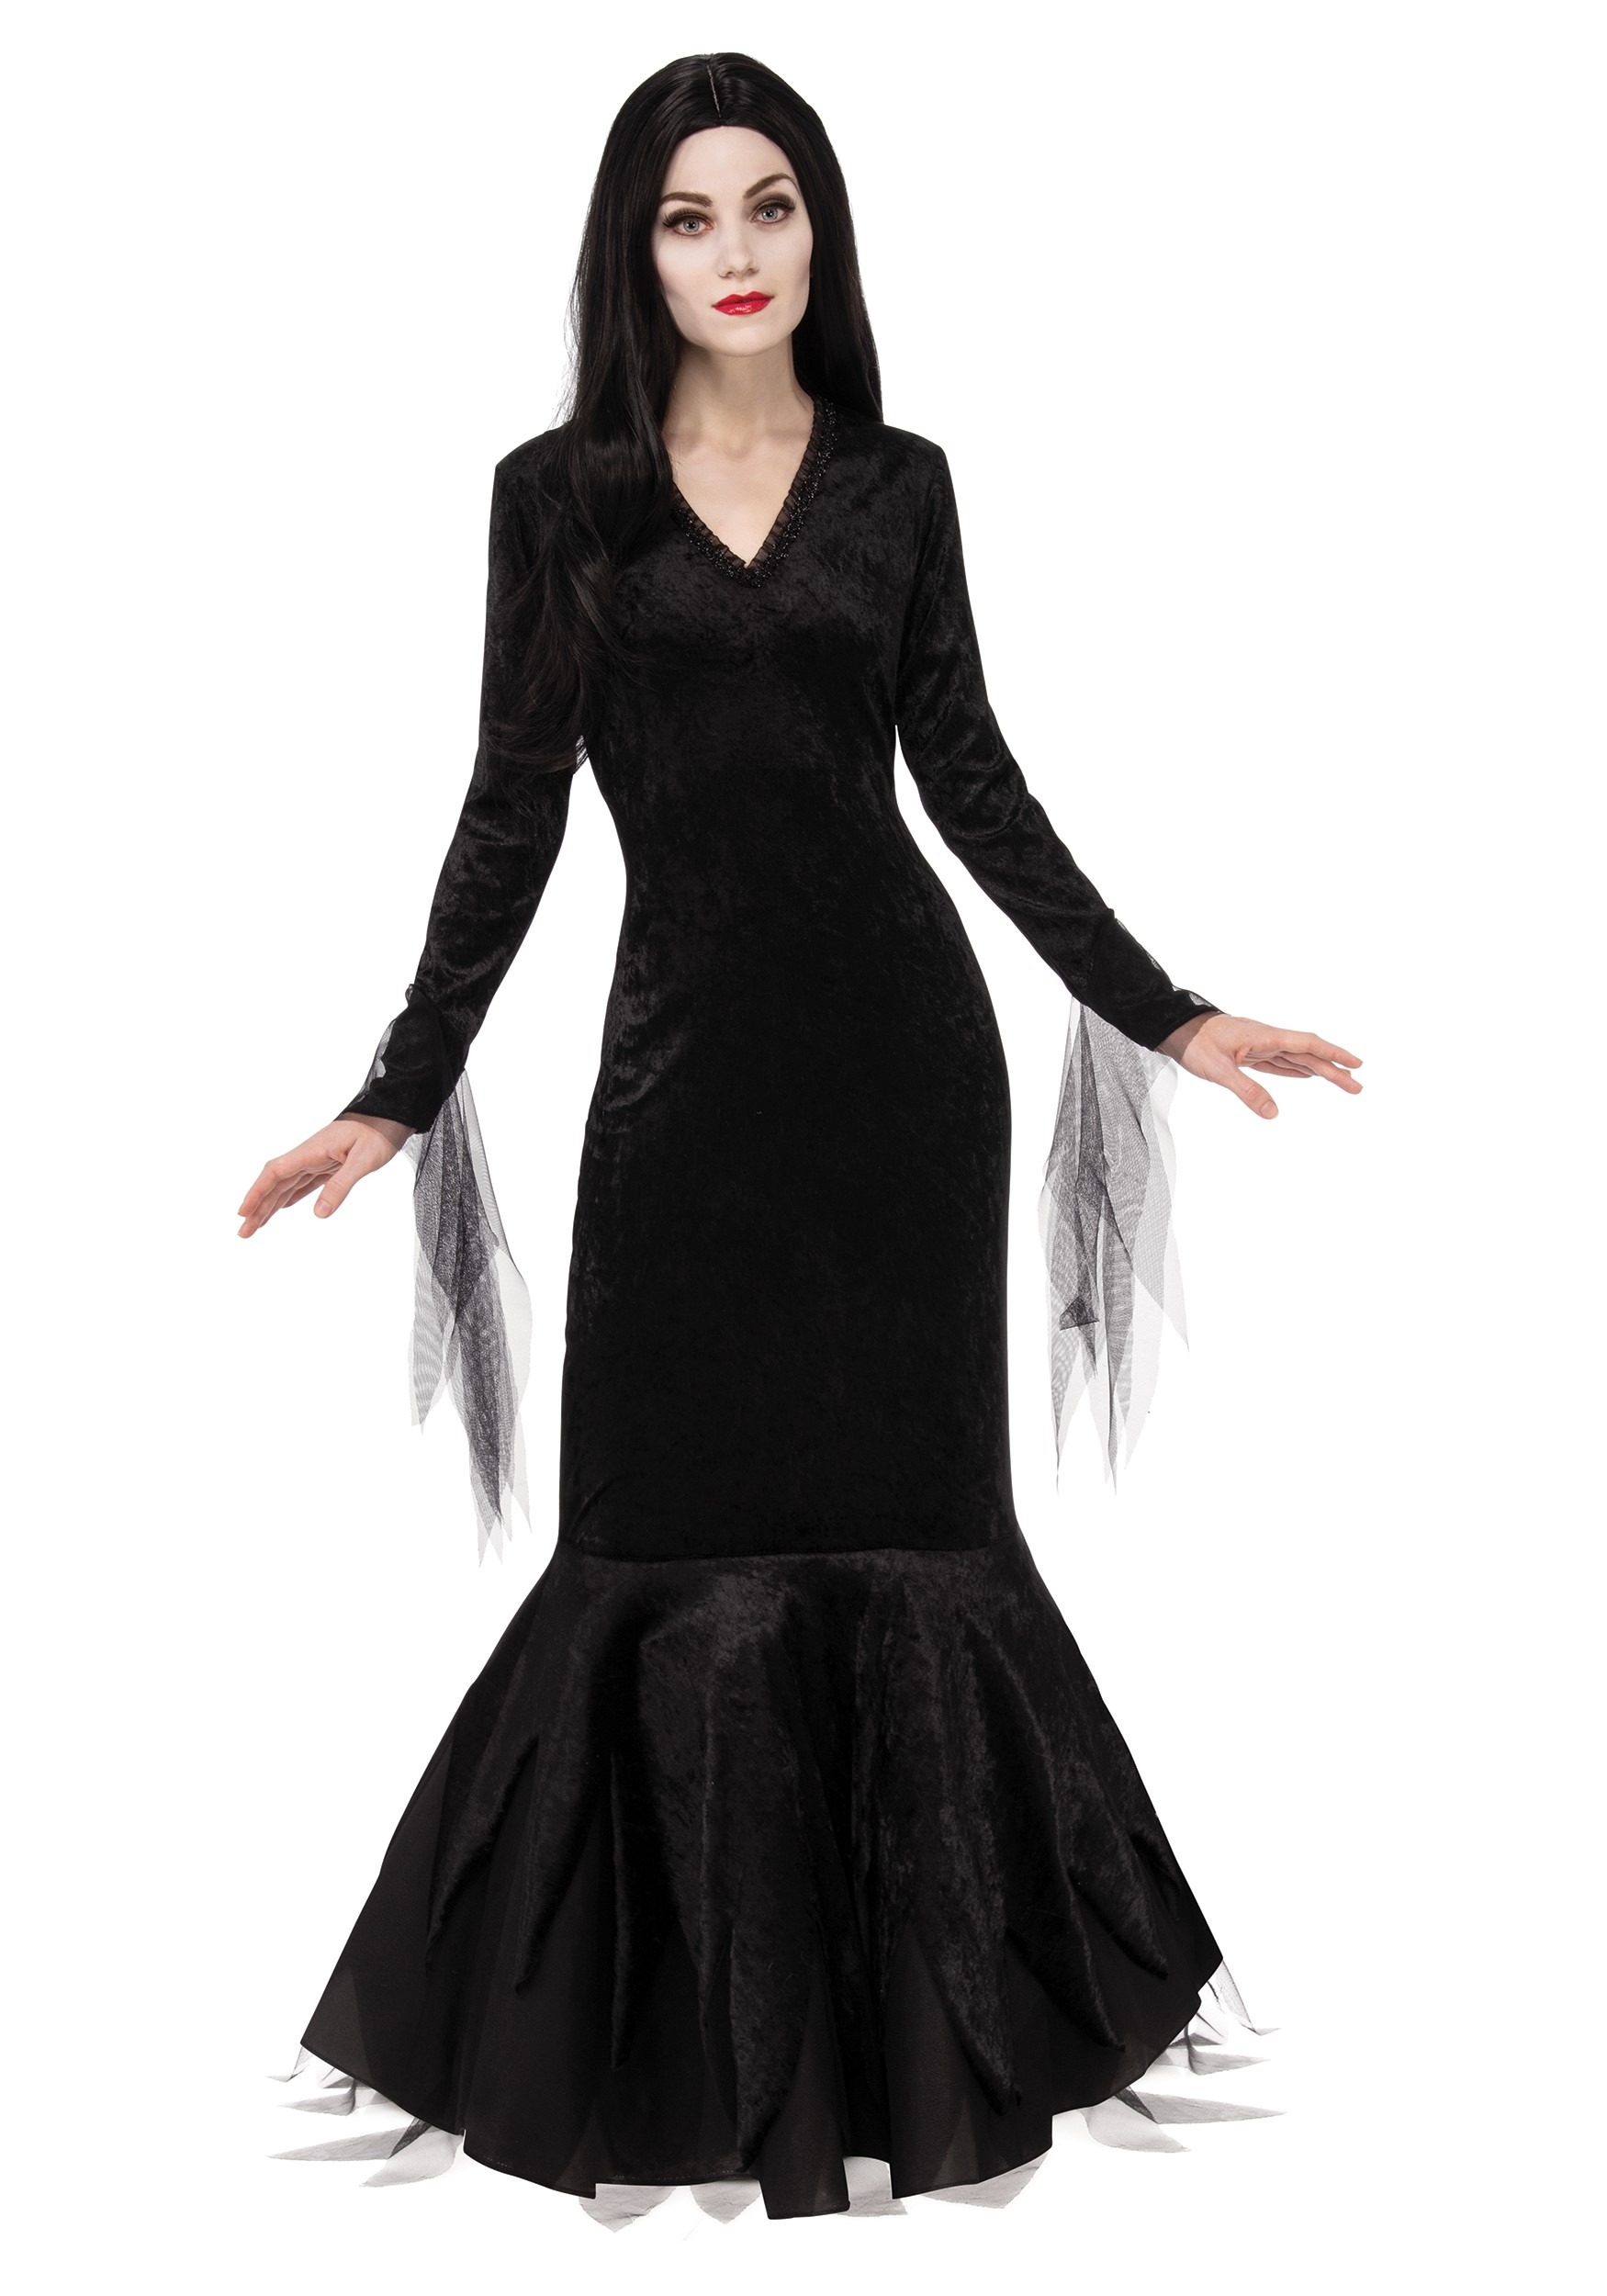 Morticia Addams Costume for Women